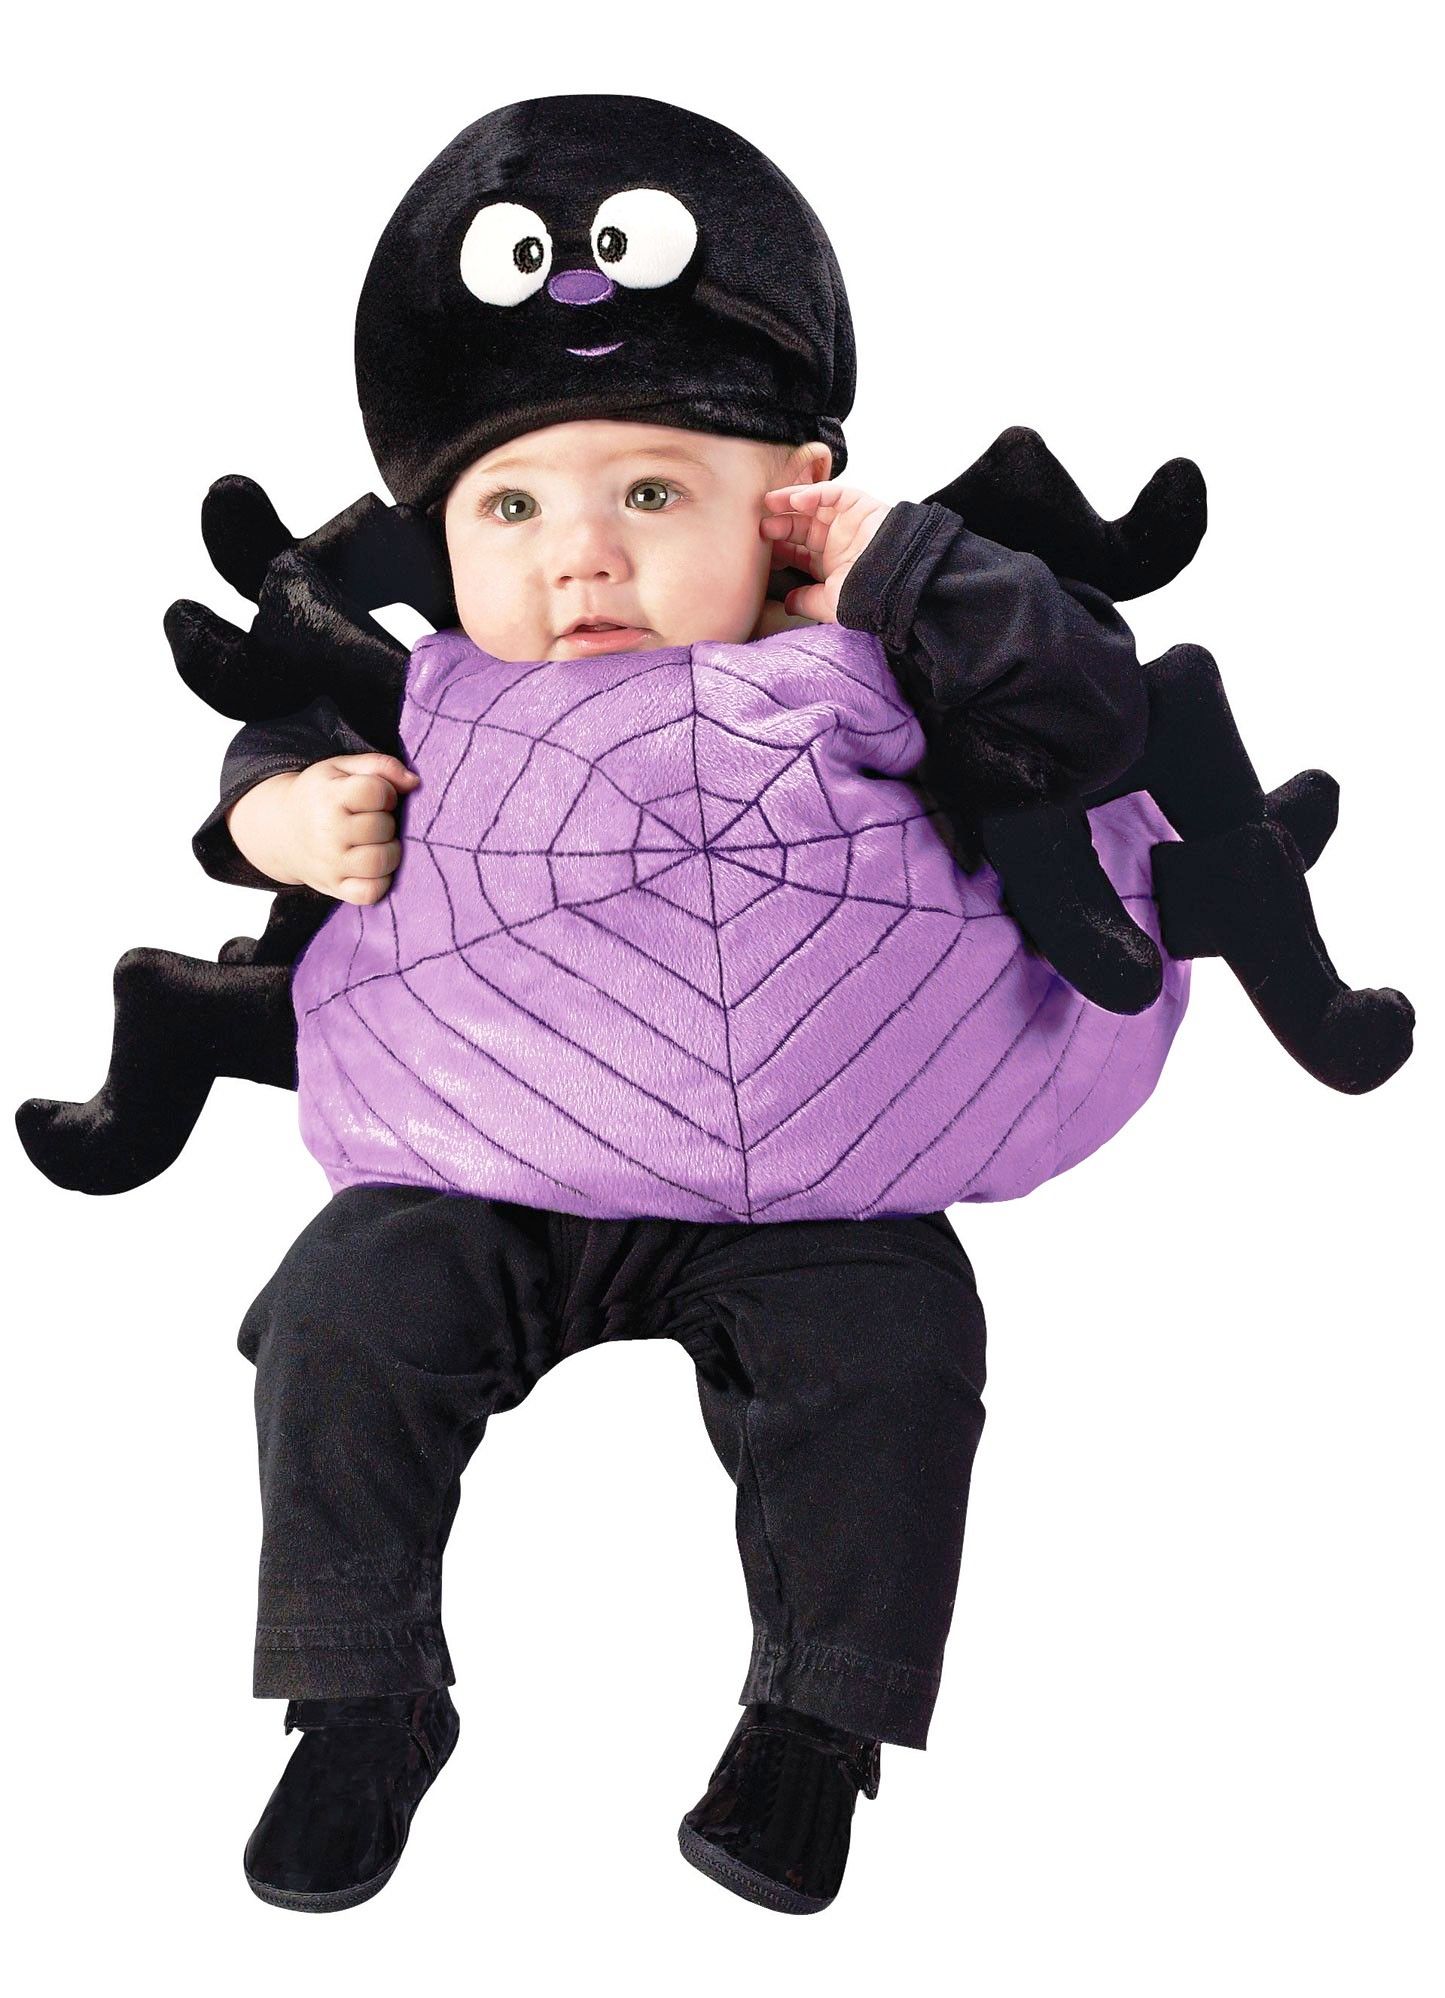 kostiumy dla dzieci na halloween11